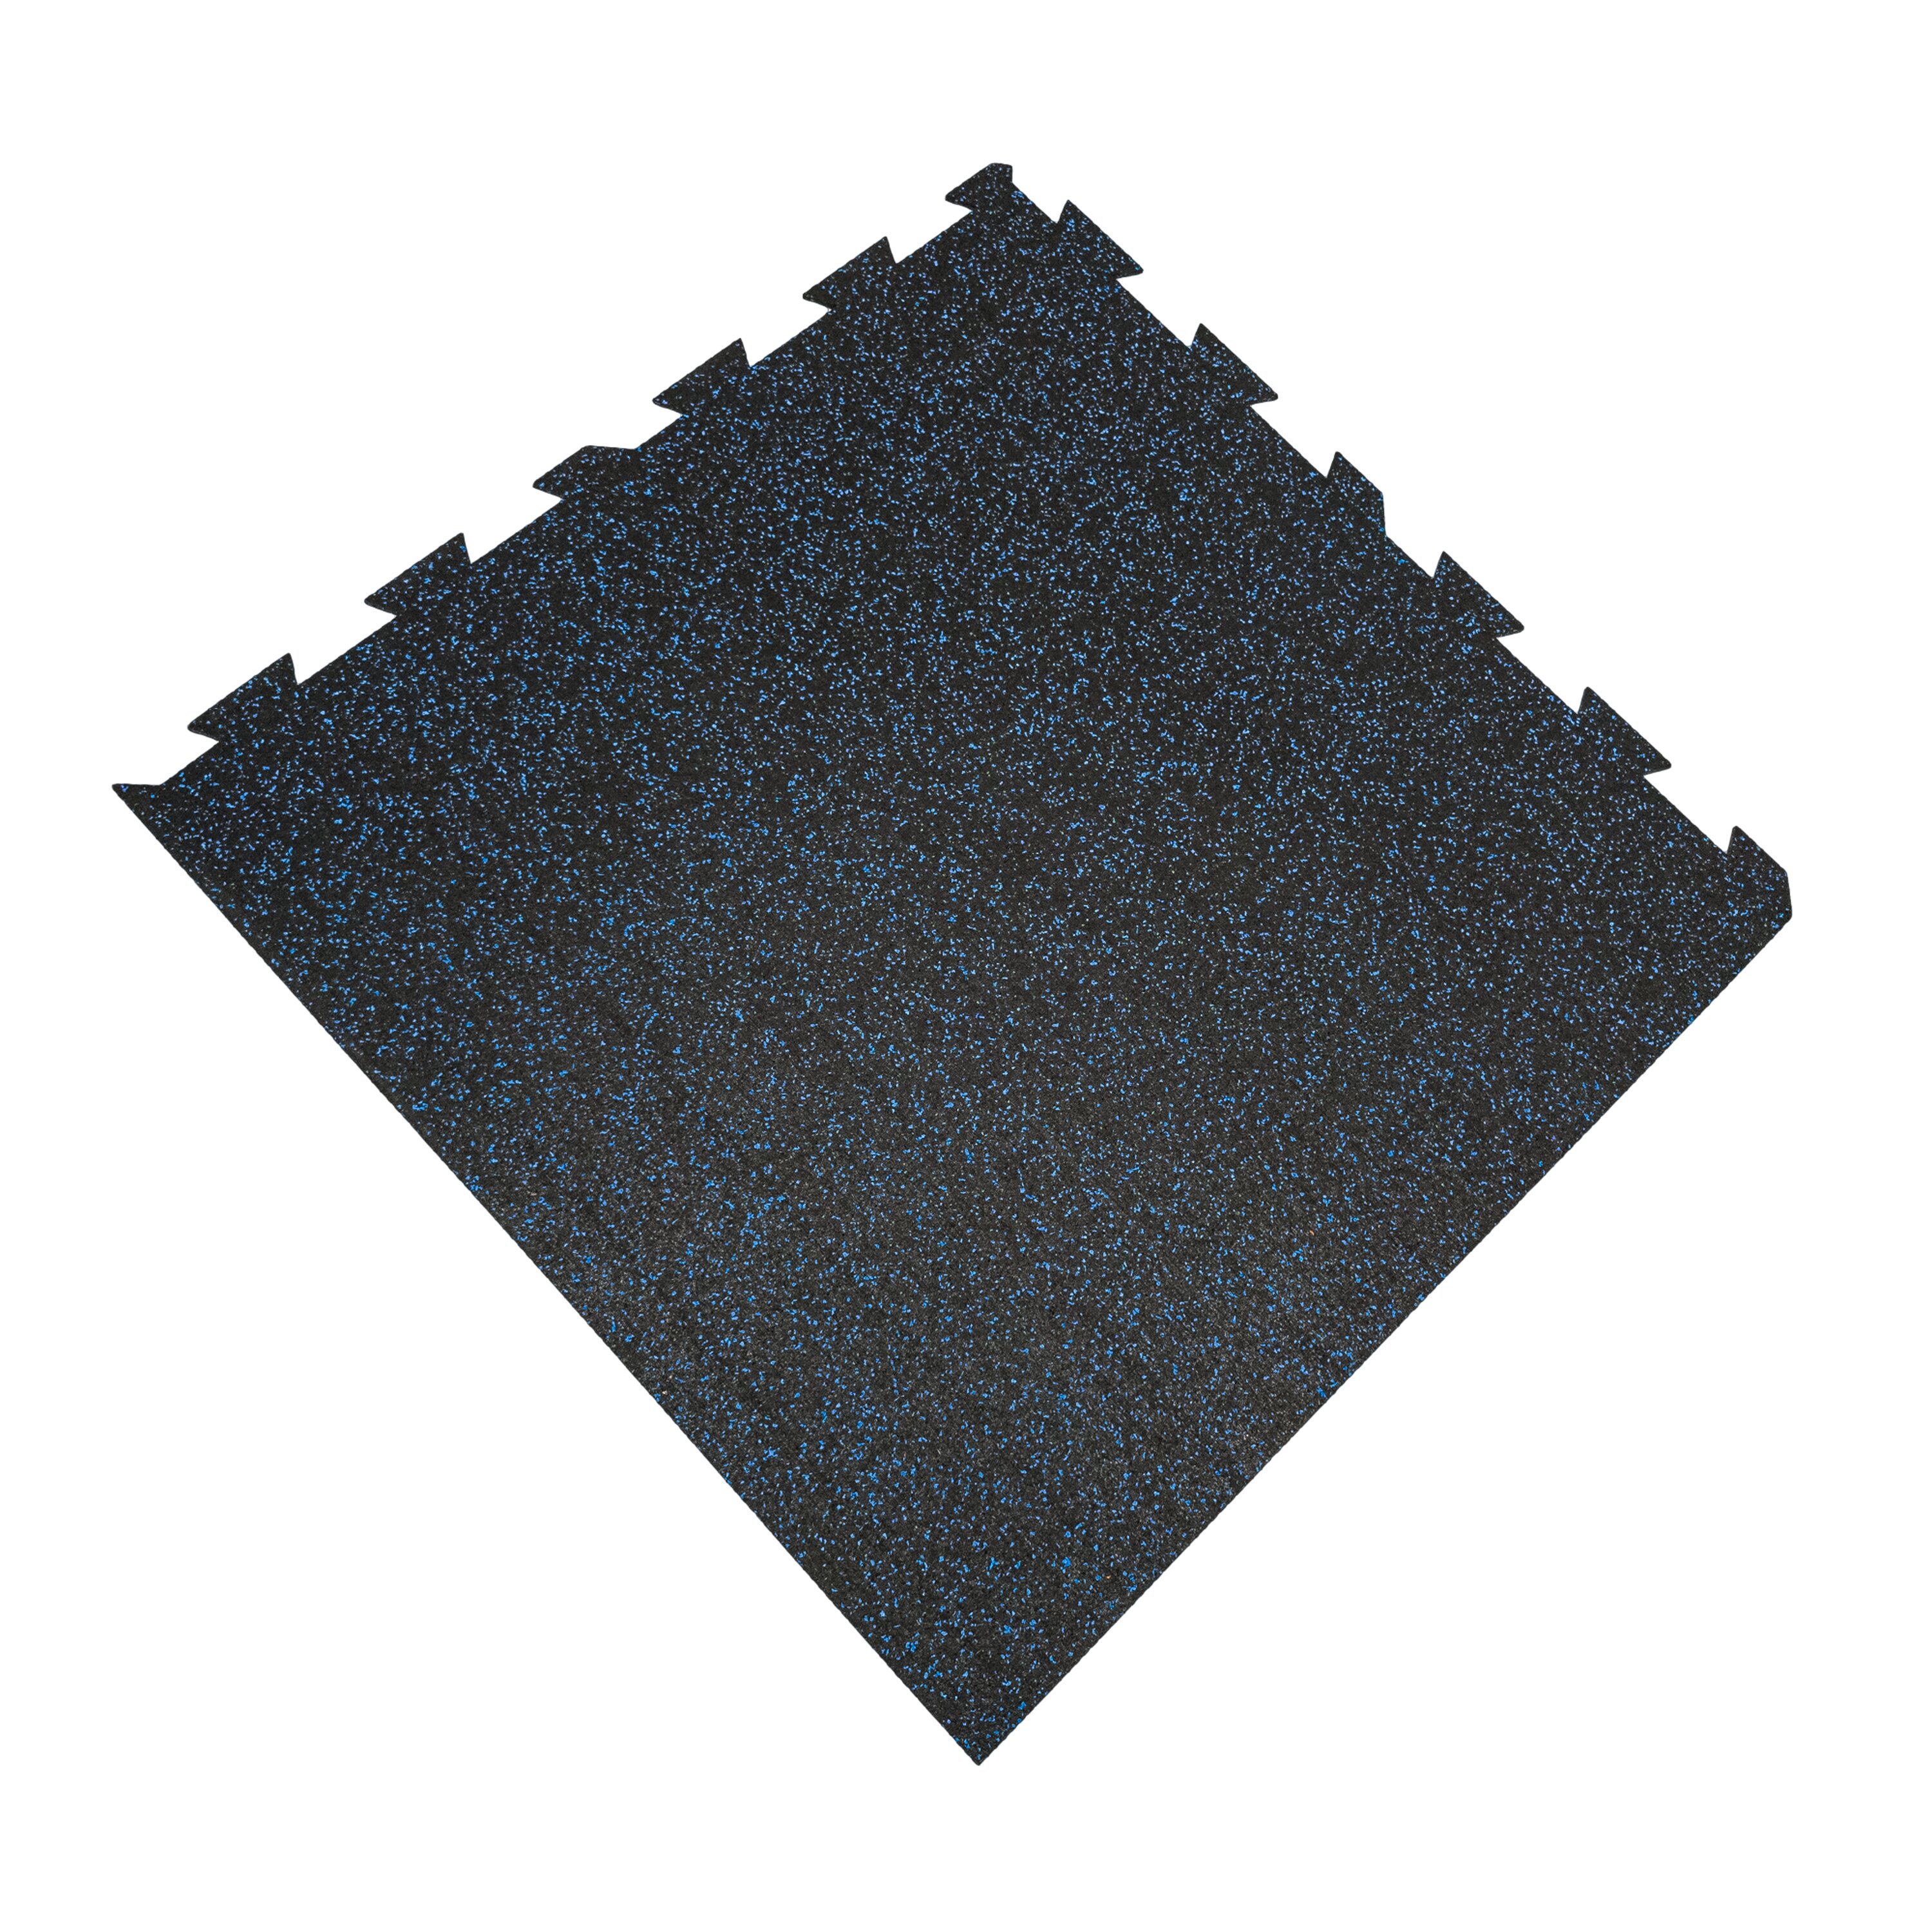 Čierno-modrá podlahová guma (puzzle - roh) FLOMA FitFlo SF1050 - dĺžka 100 cm, šírka 100 cm, výška 1,6 cm